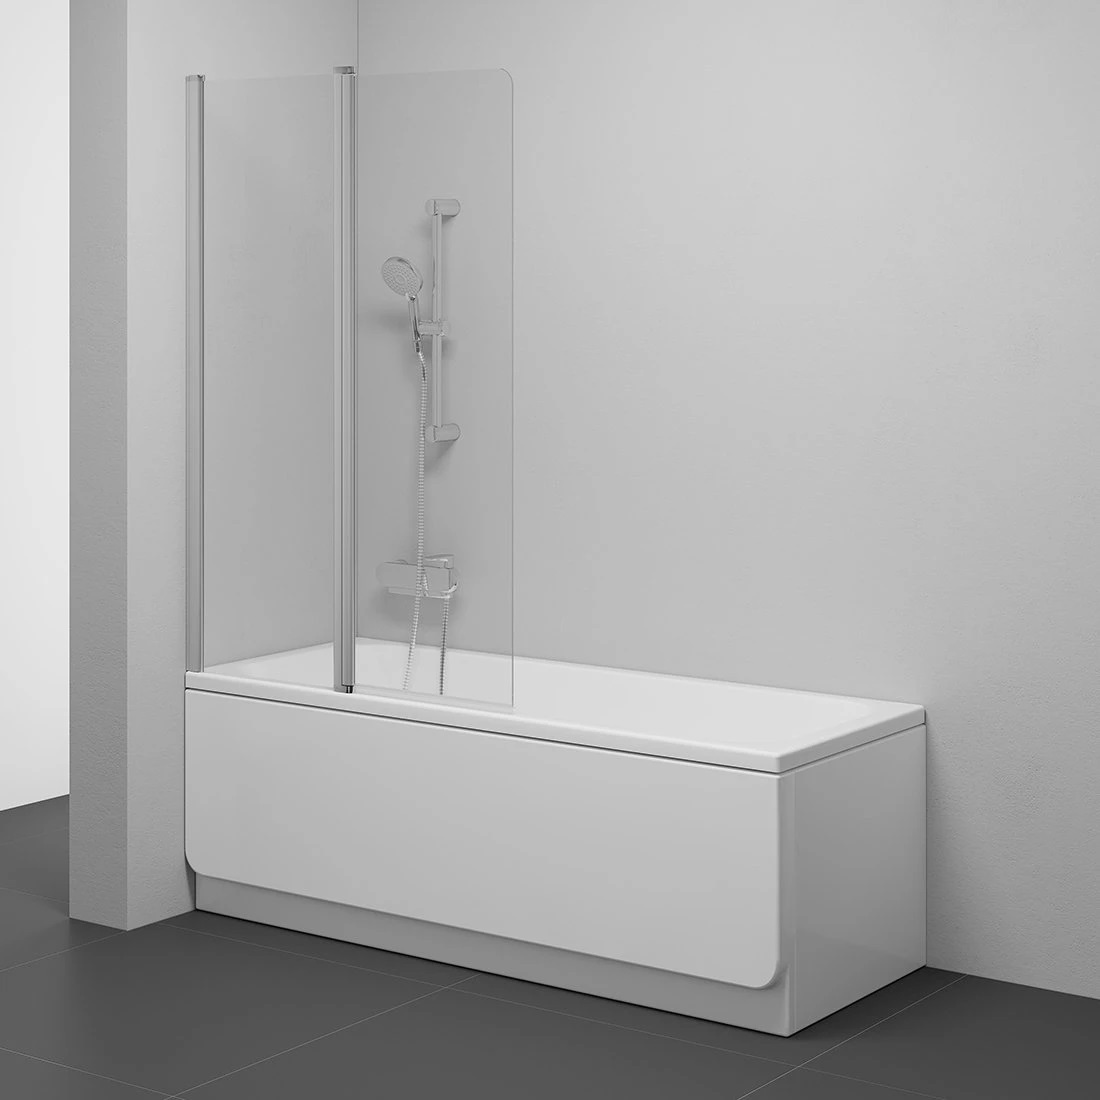 Шторка стеклянная для ванны двухсекционная распашная 150x99см RAVAK CHROME CVS2-100 L стекло прозрачное 6мм профиль сатин 7QLA0U00Z1